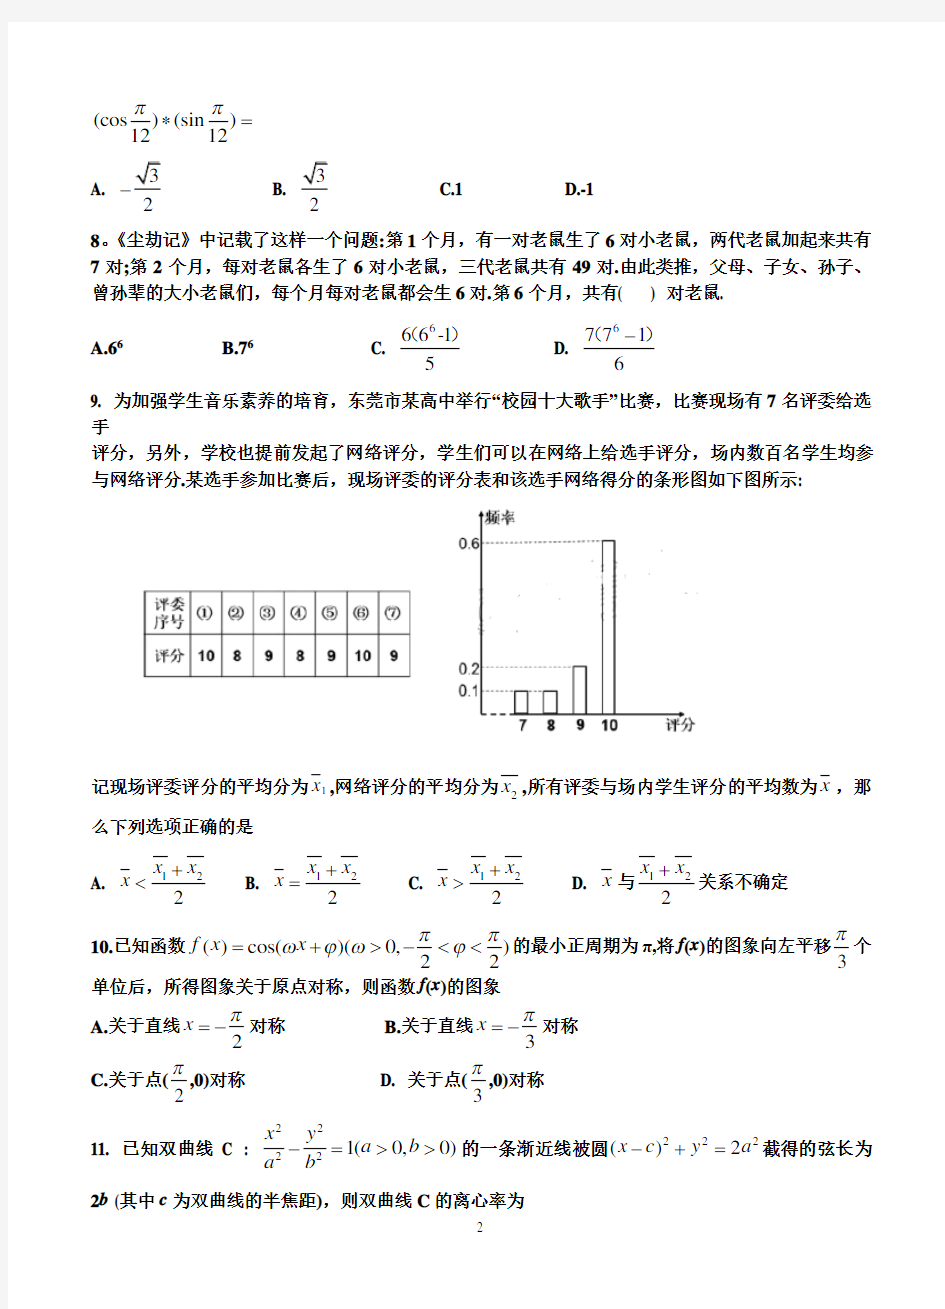 2020年广东省东莞市高三模拟考试理科数学试题-含答案